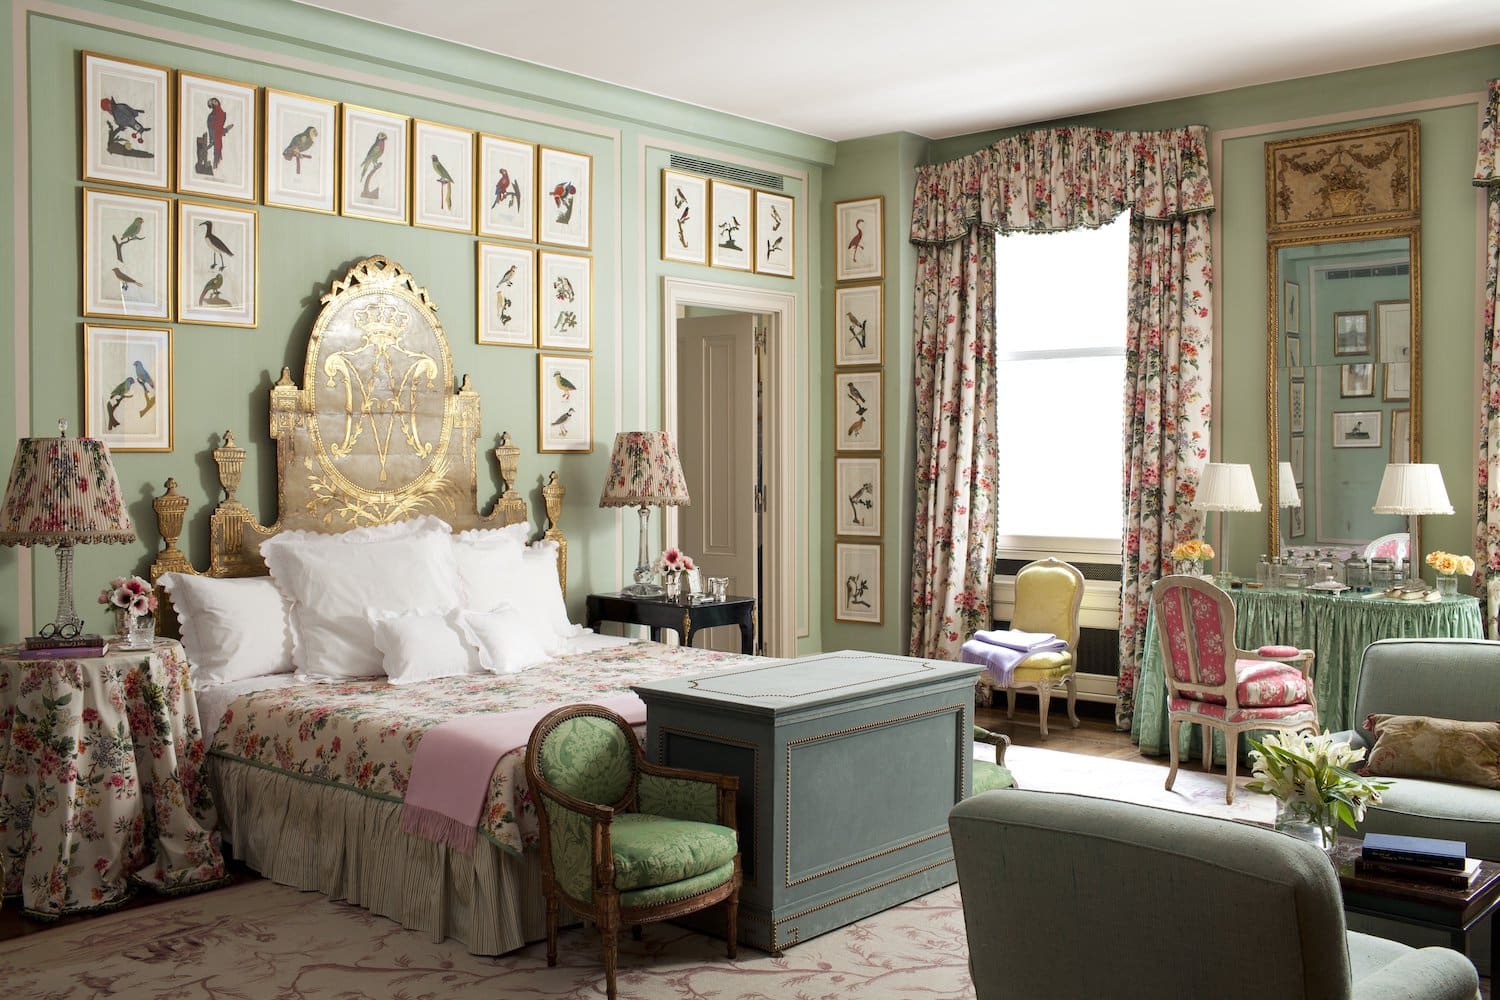 A New York City bedroom designed by Brockschmidt & Coleman